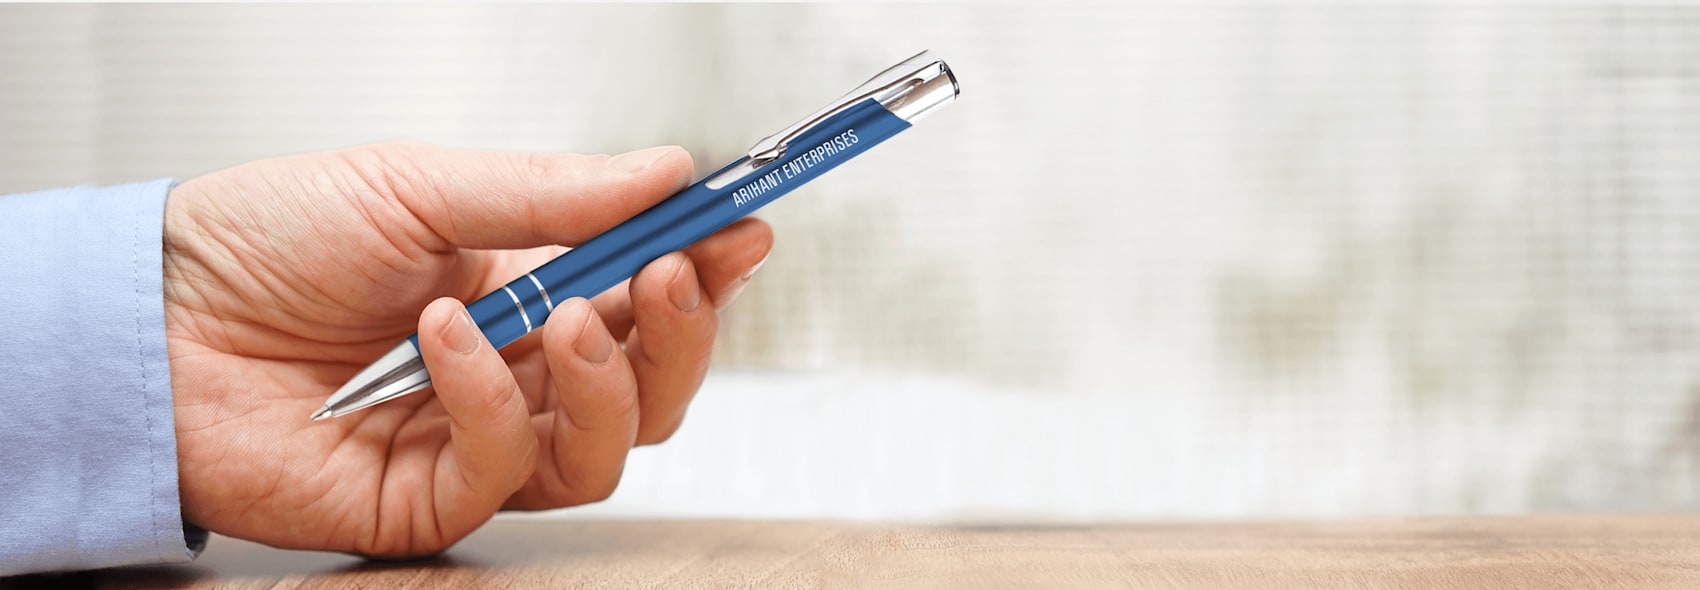 personalised sleek pens